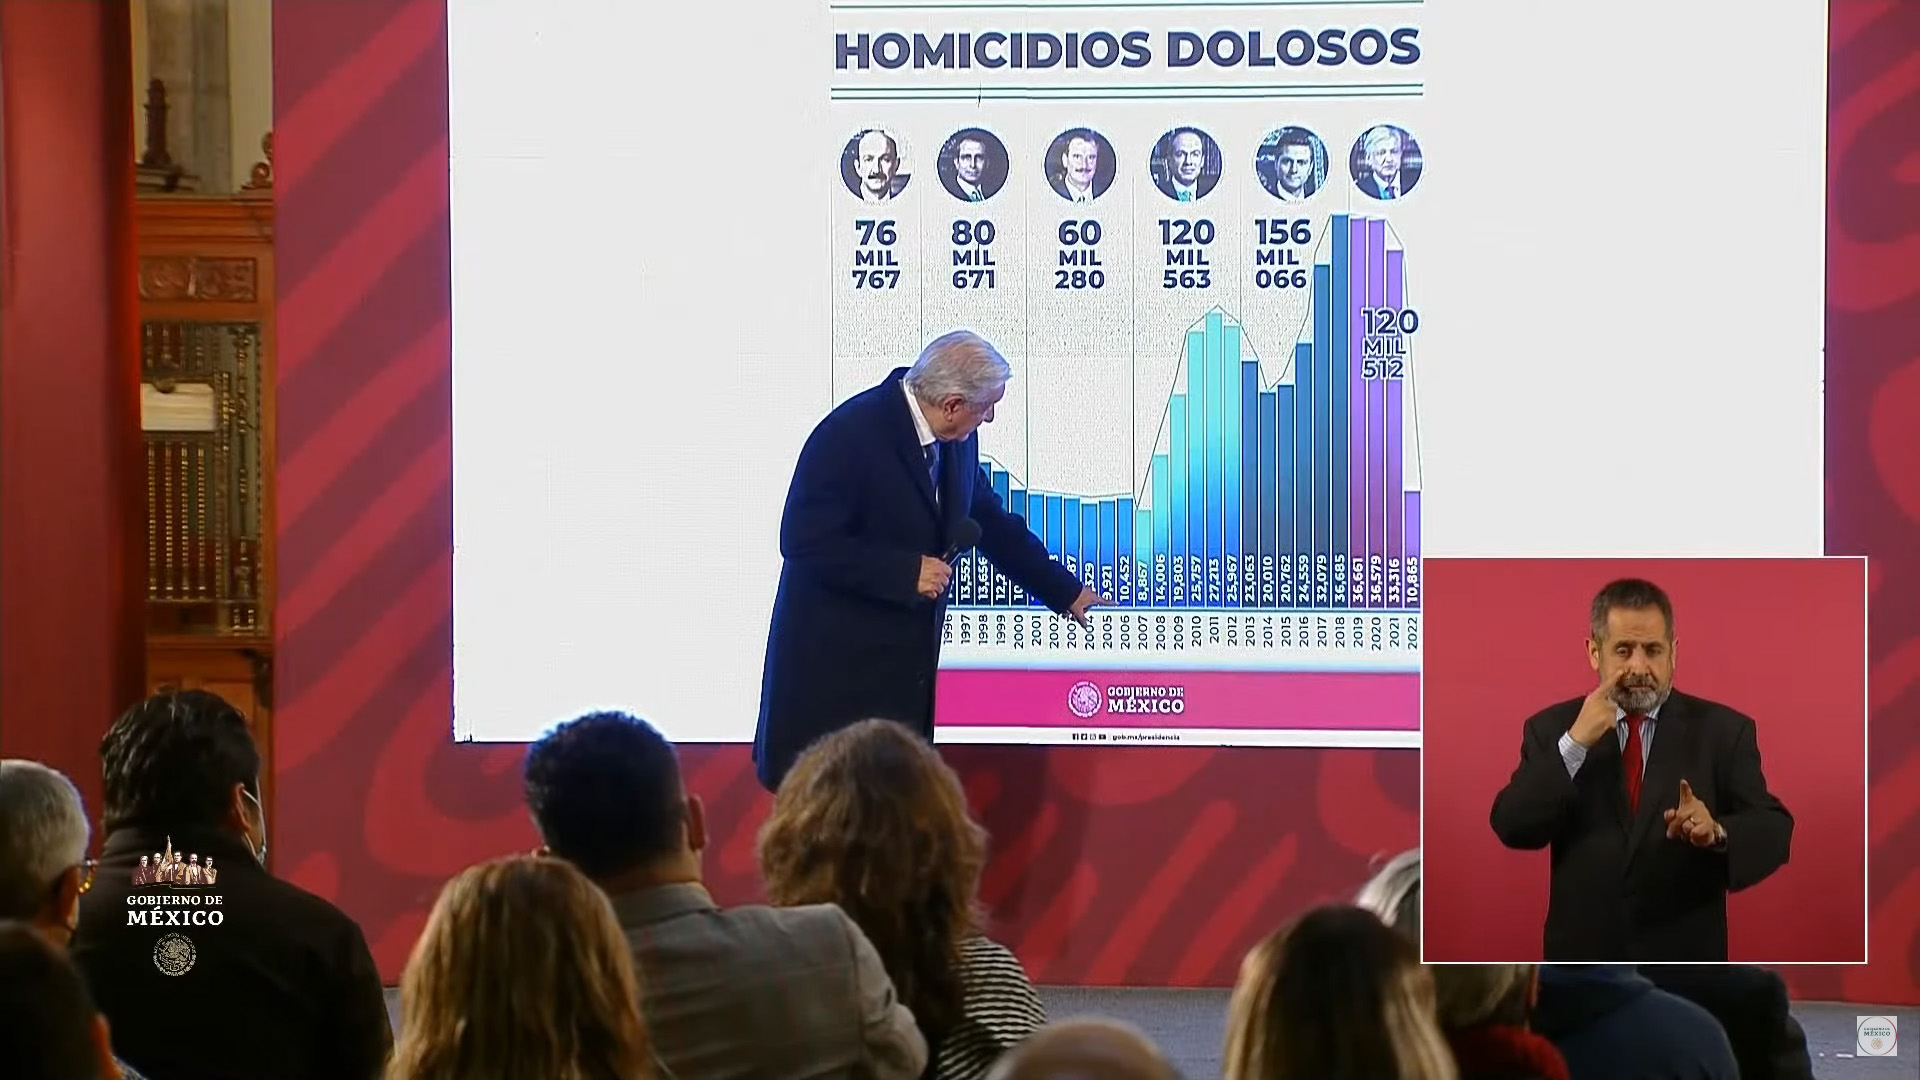 López Obrador presumió a los medios de comunicación que los homicidios dolosos en México han ido a la baja (YouTube: Gobierno de México)